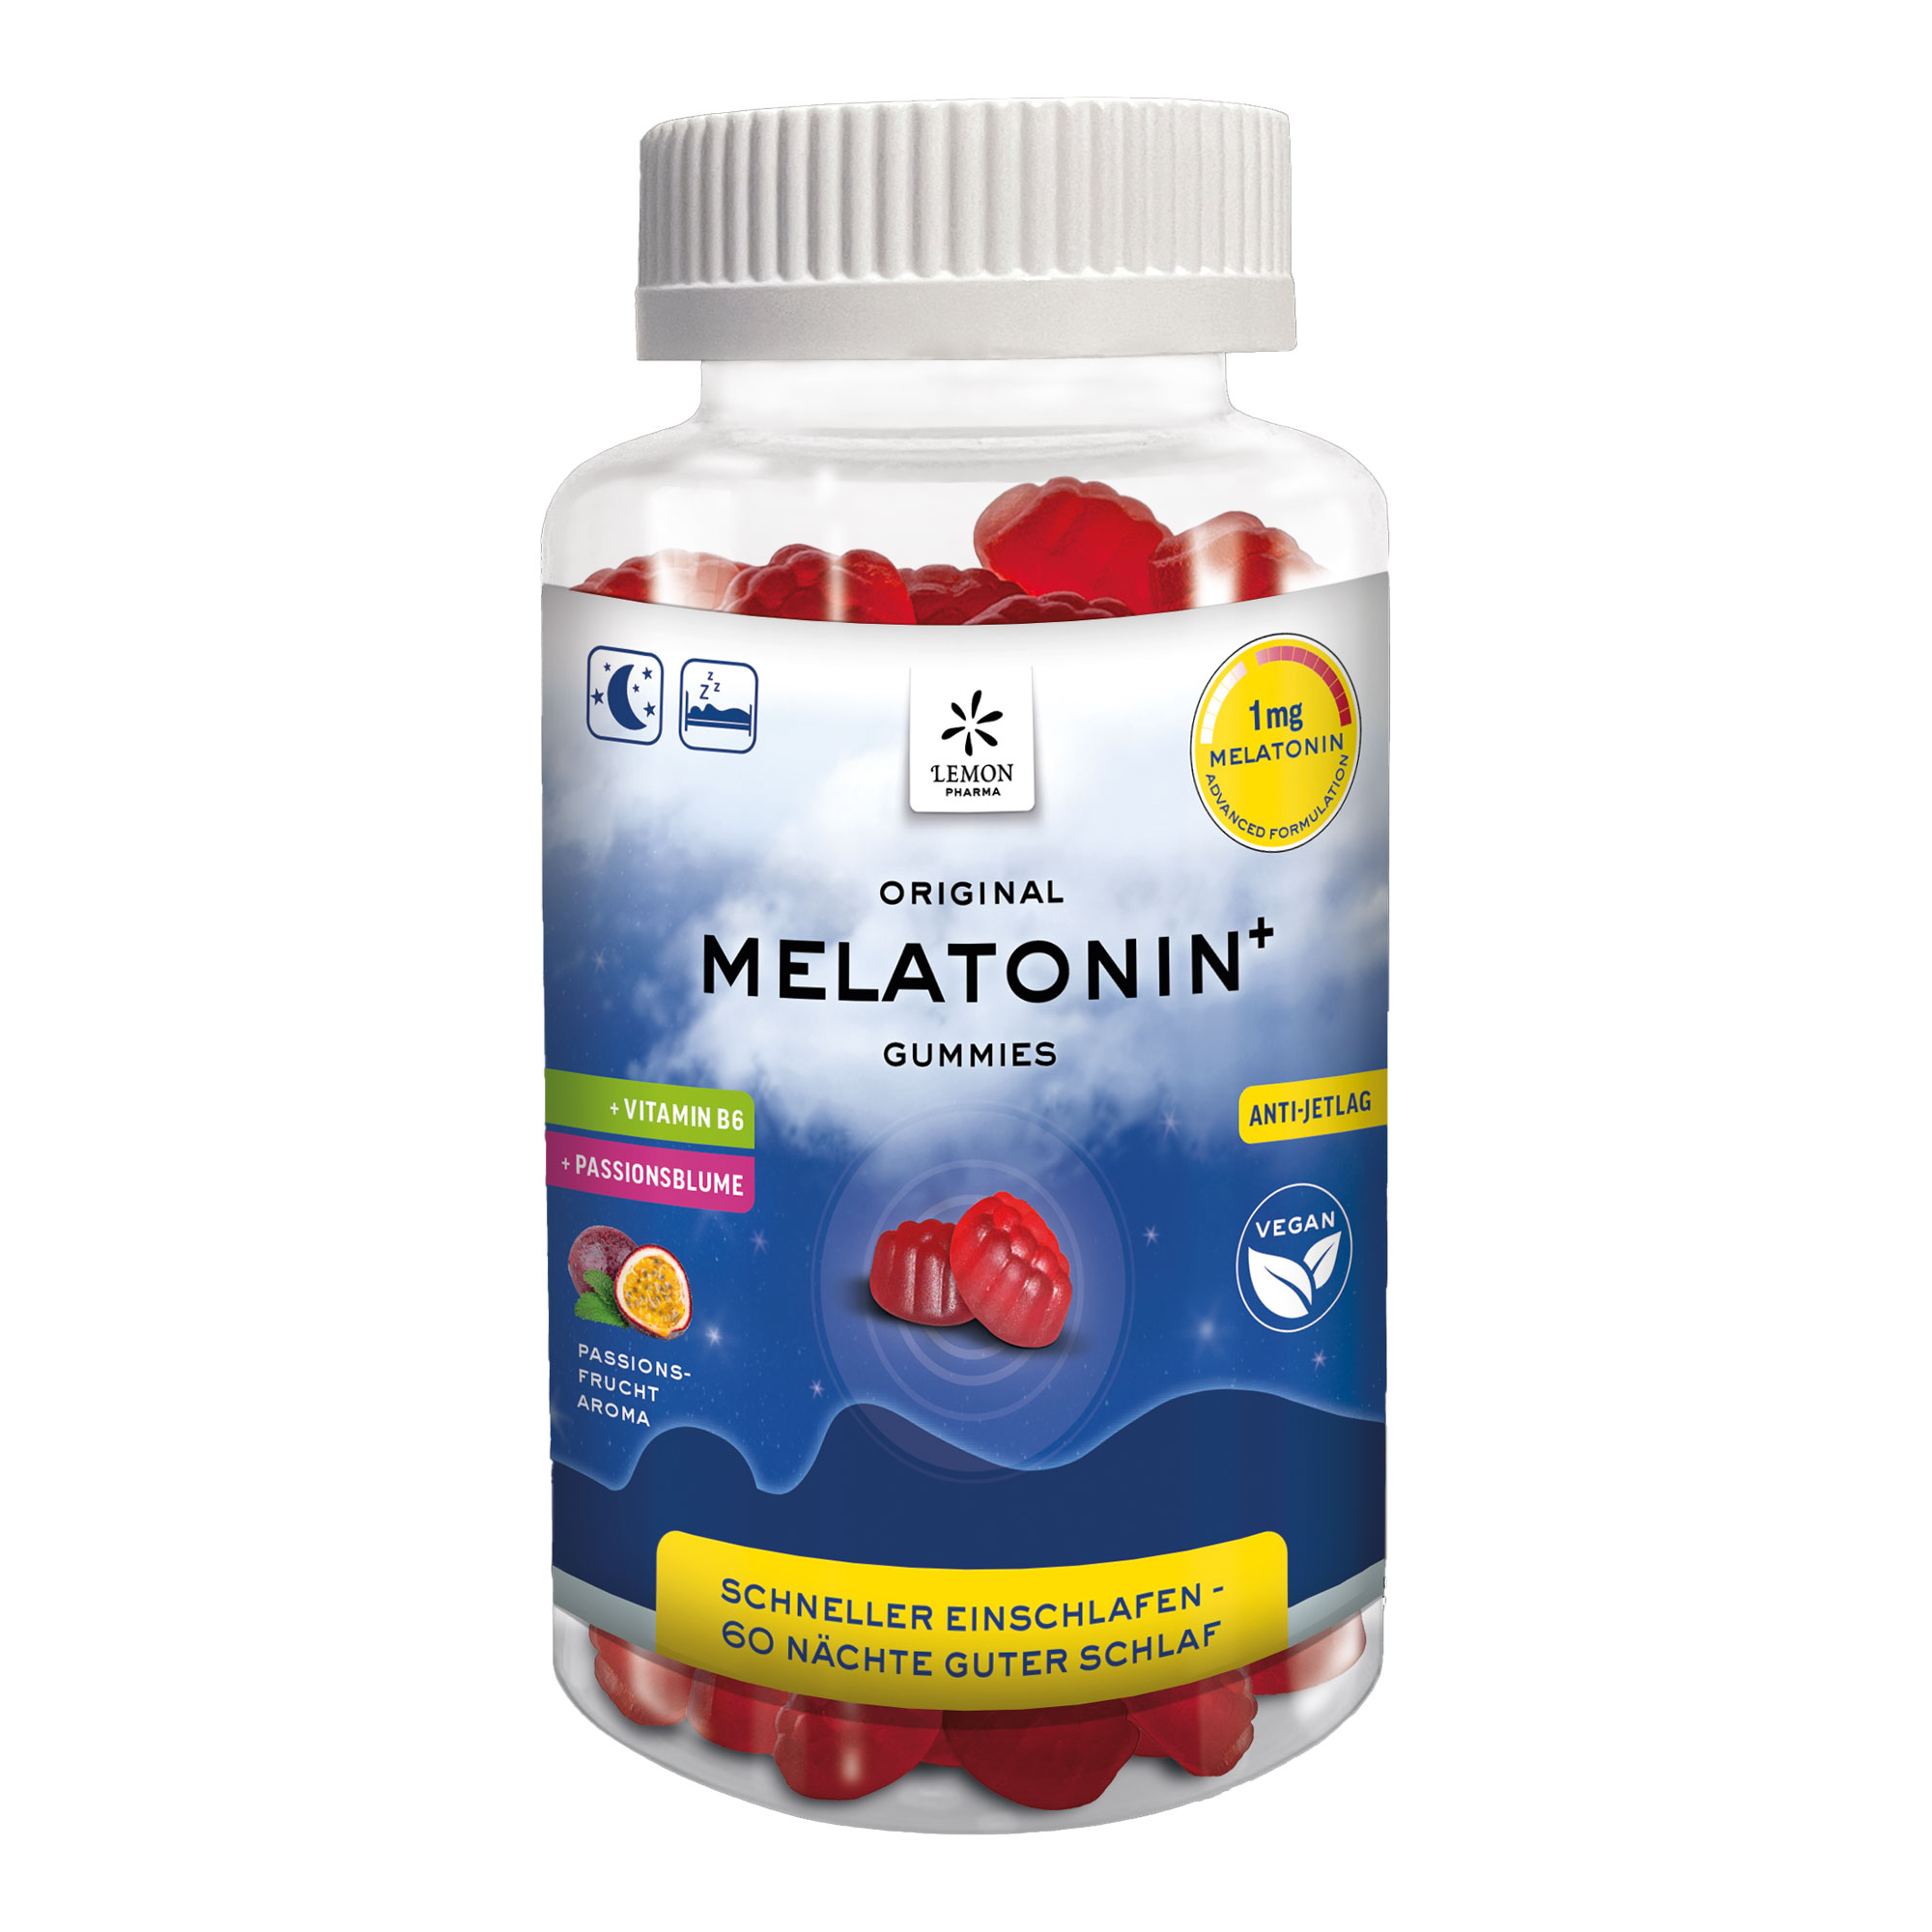 Nahrungsergänzungsmittel mit 1 mg Melatonin, Vitamin B6 und Passionsblumenkrautextrakt. Mit Passionsfrucht-Geschmack.